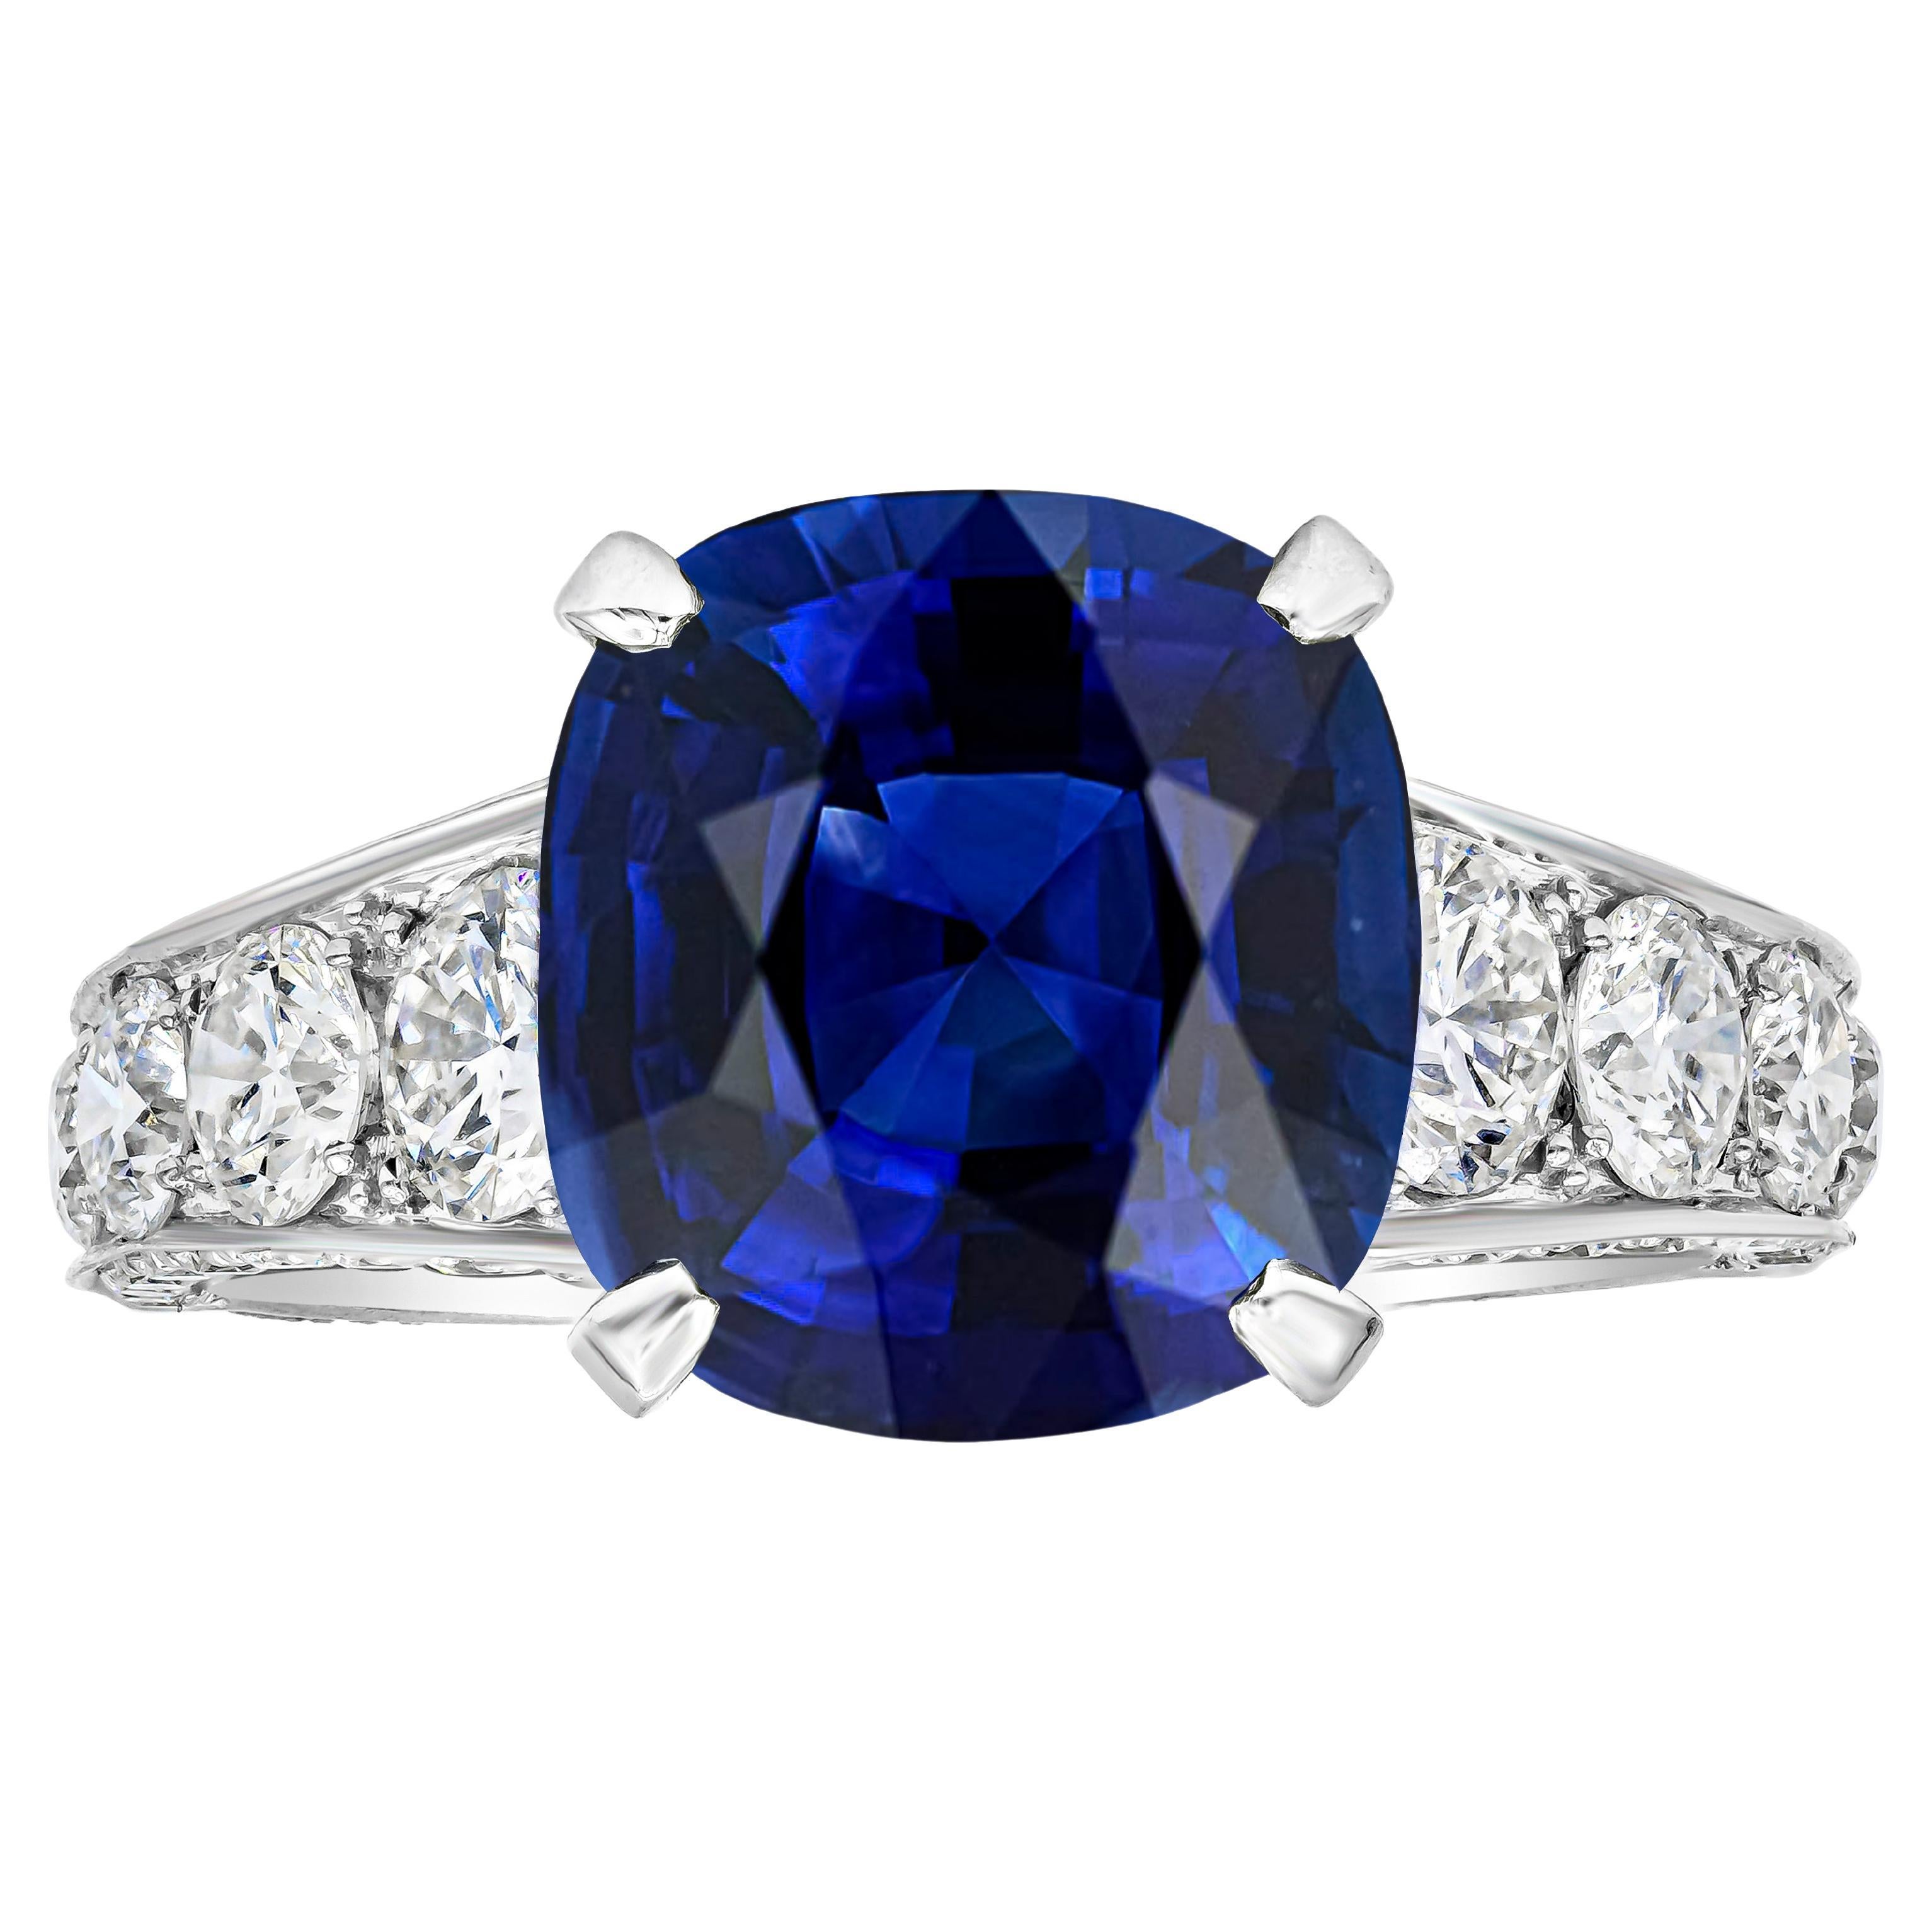 Roman Malakov Bague de fiançailles avec saphir bleu taille coussin et diamants de 7,66 carats